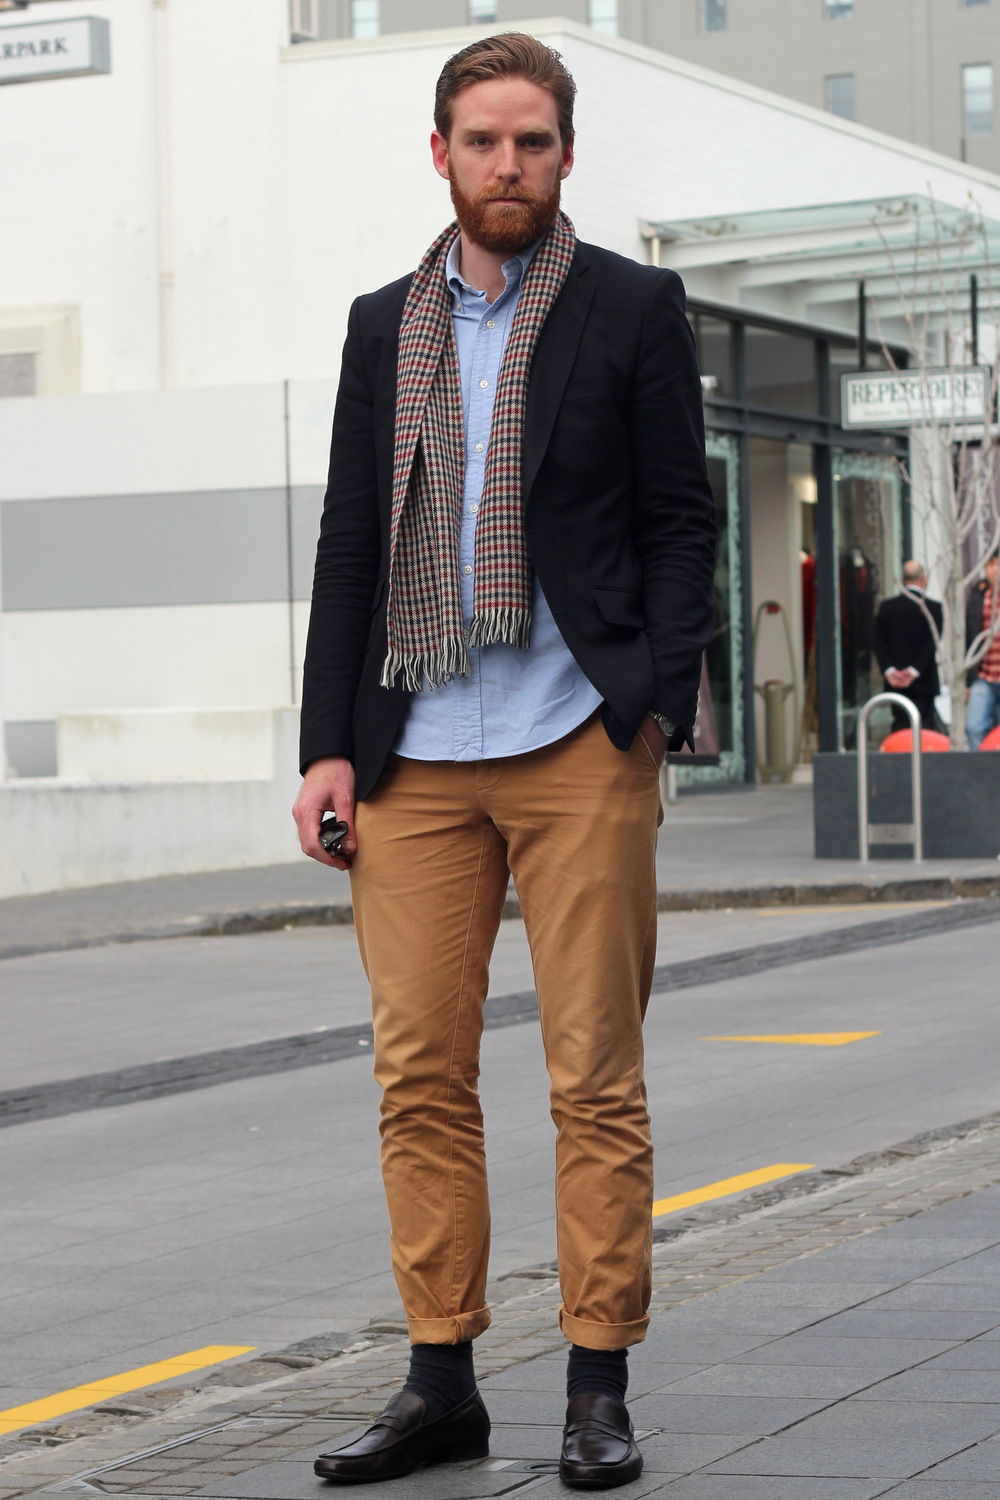 TOM - FOUREYES | New Zealand Street Style Fashion Blog